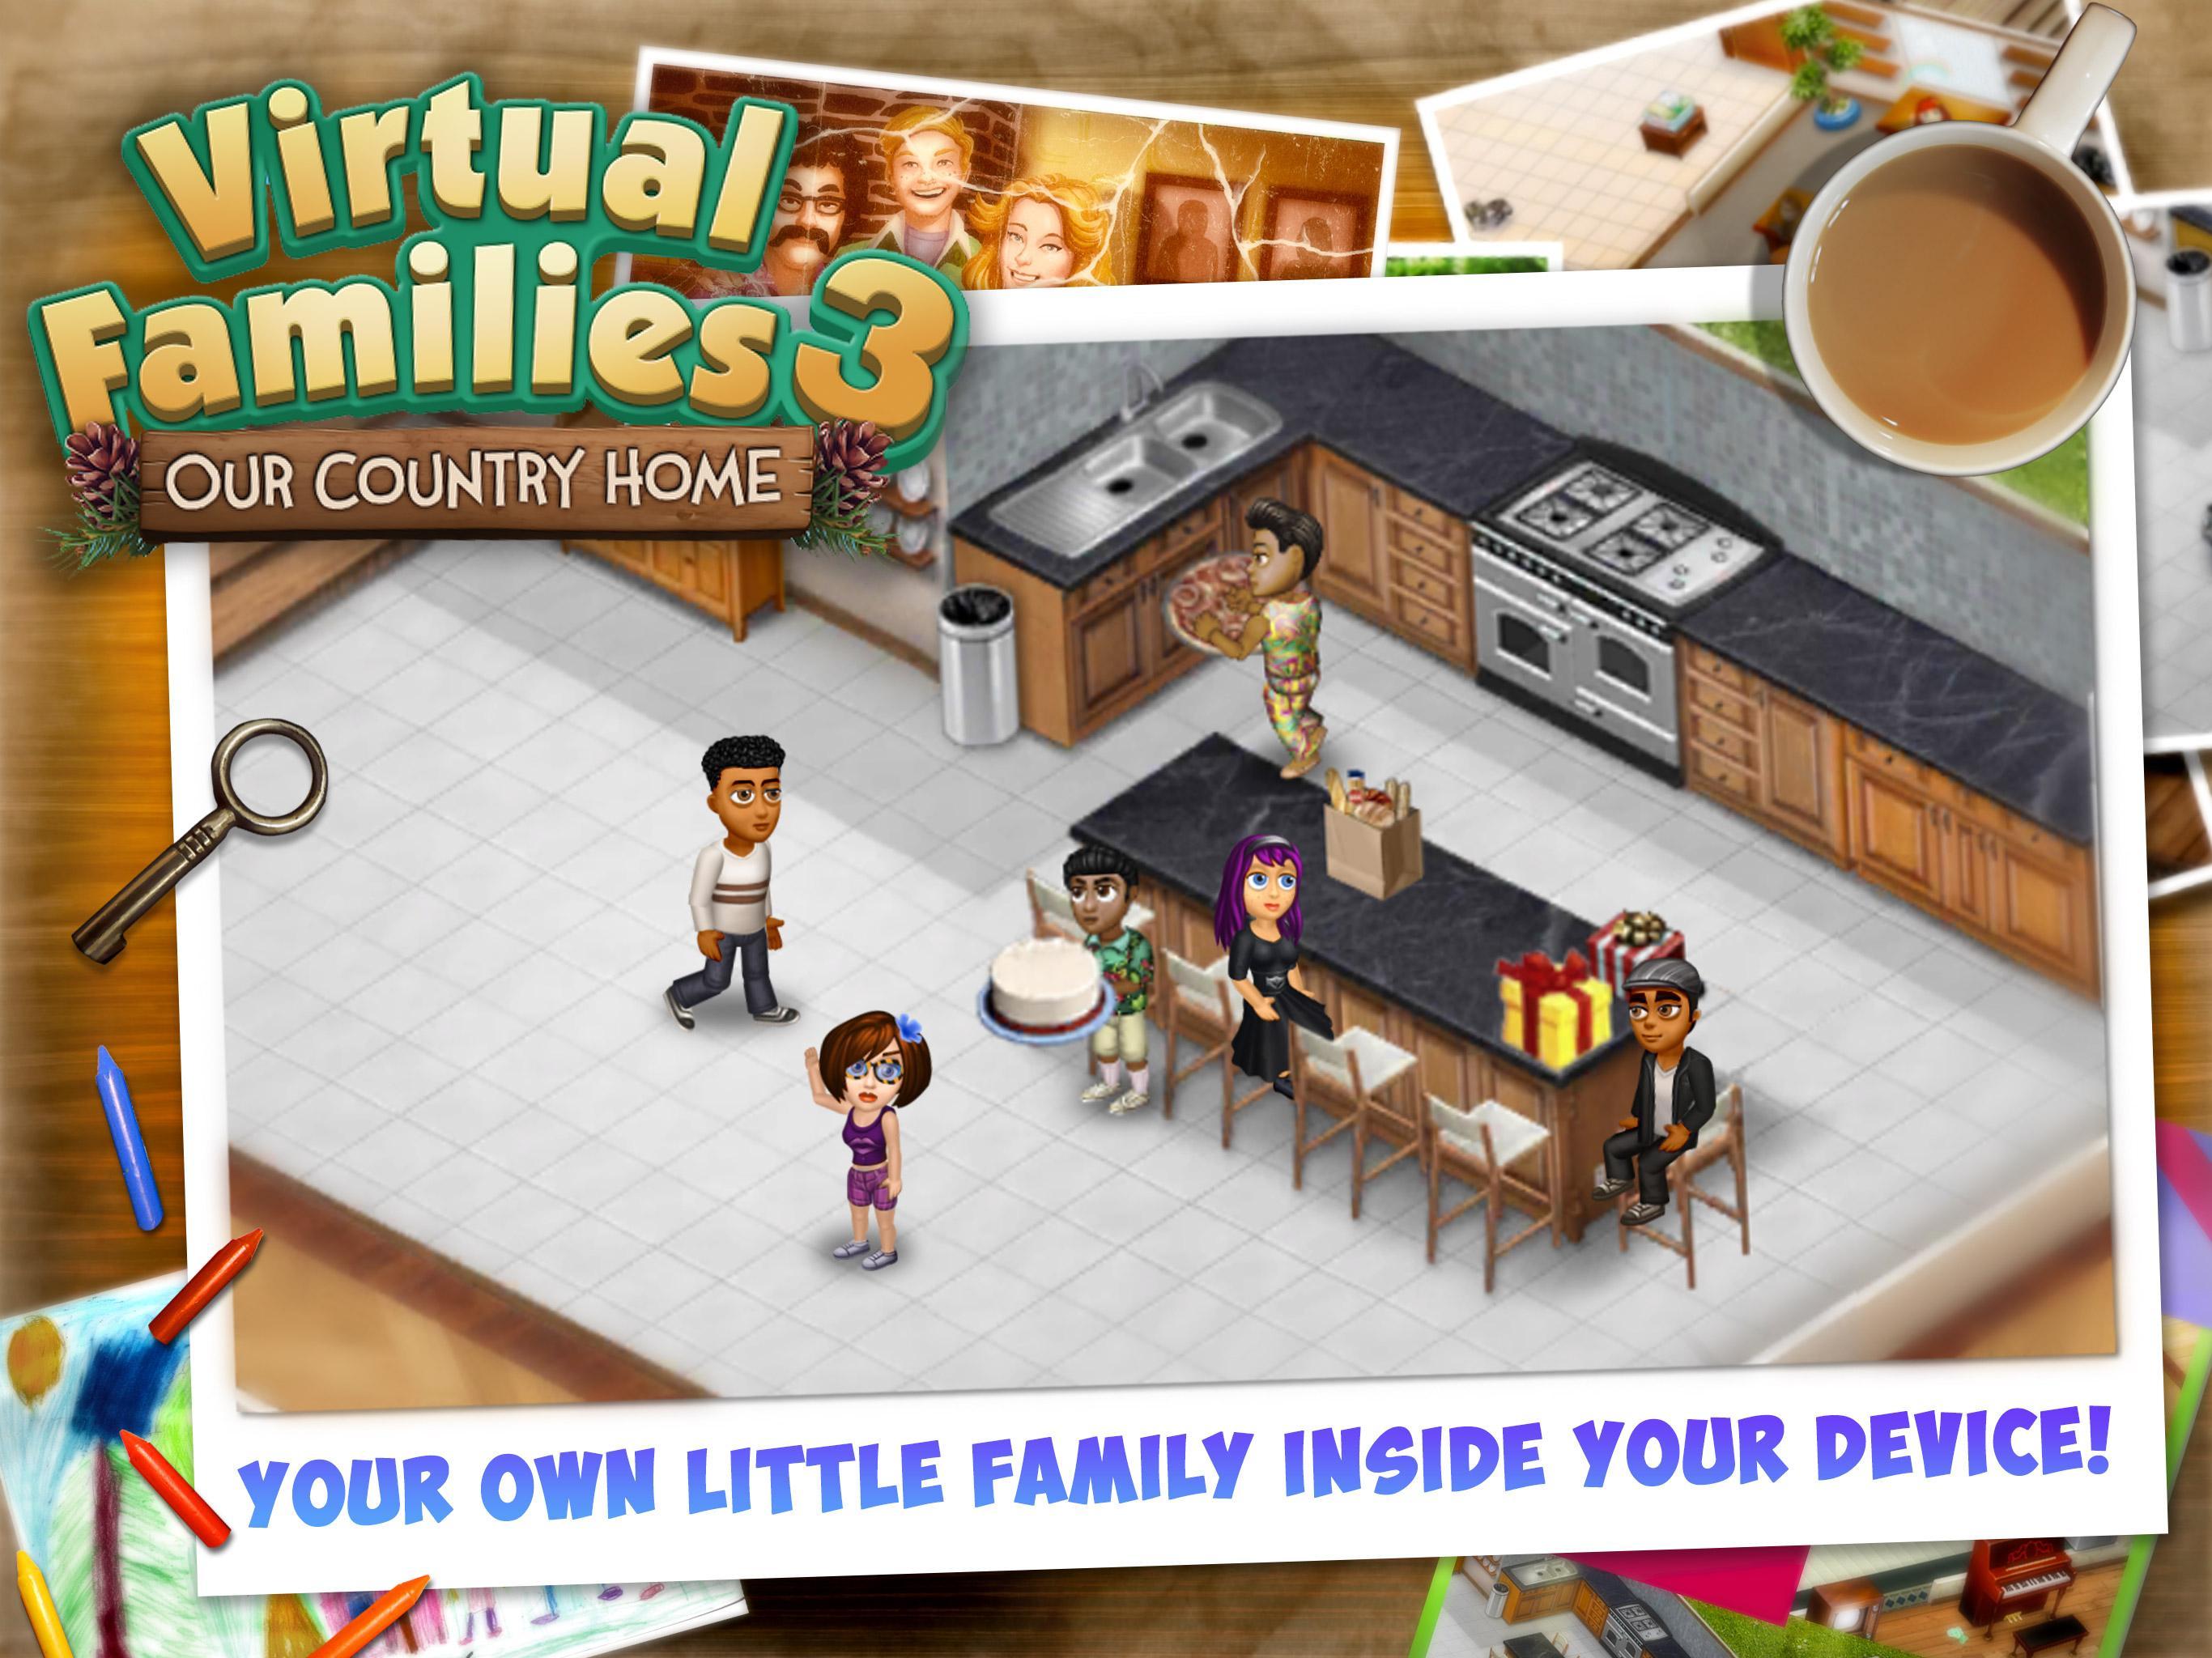 Virtual Families 3のキャプチャ